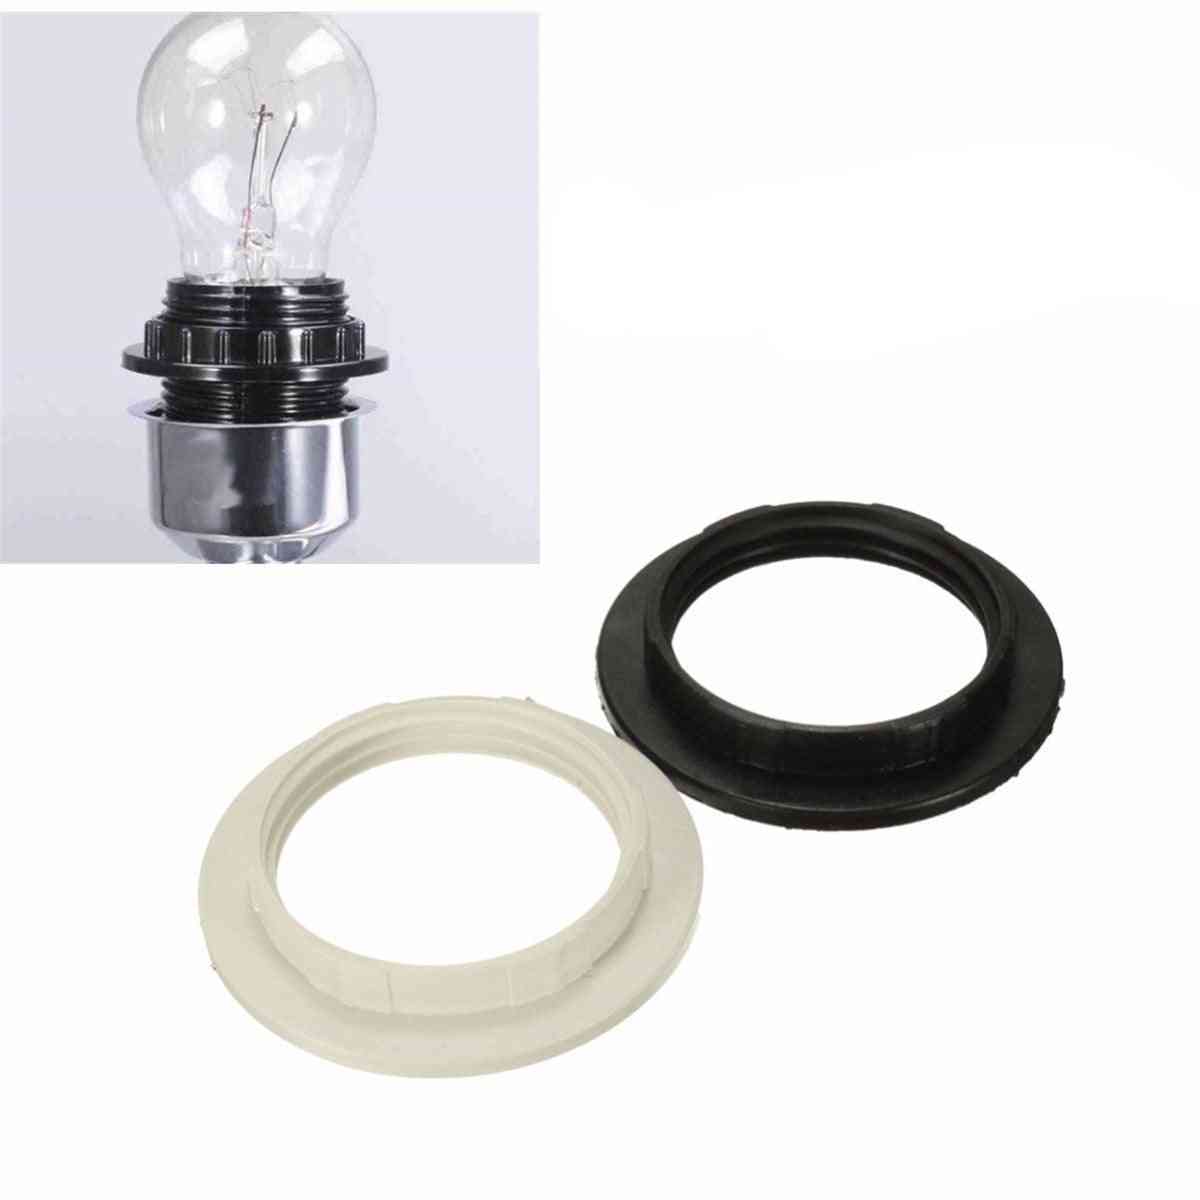 40 mm / 57 mm E27 lampenkap ring adapter lichtkappen, kraag ring adapter voor lamphouder lampenkap accessoires - zwart